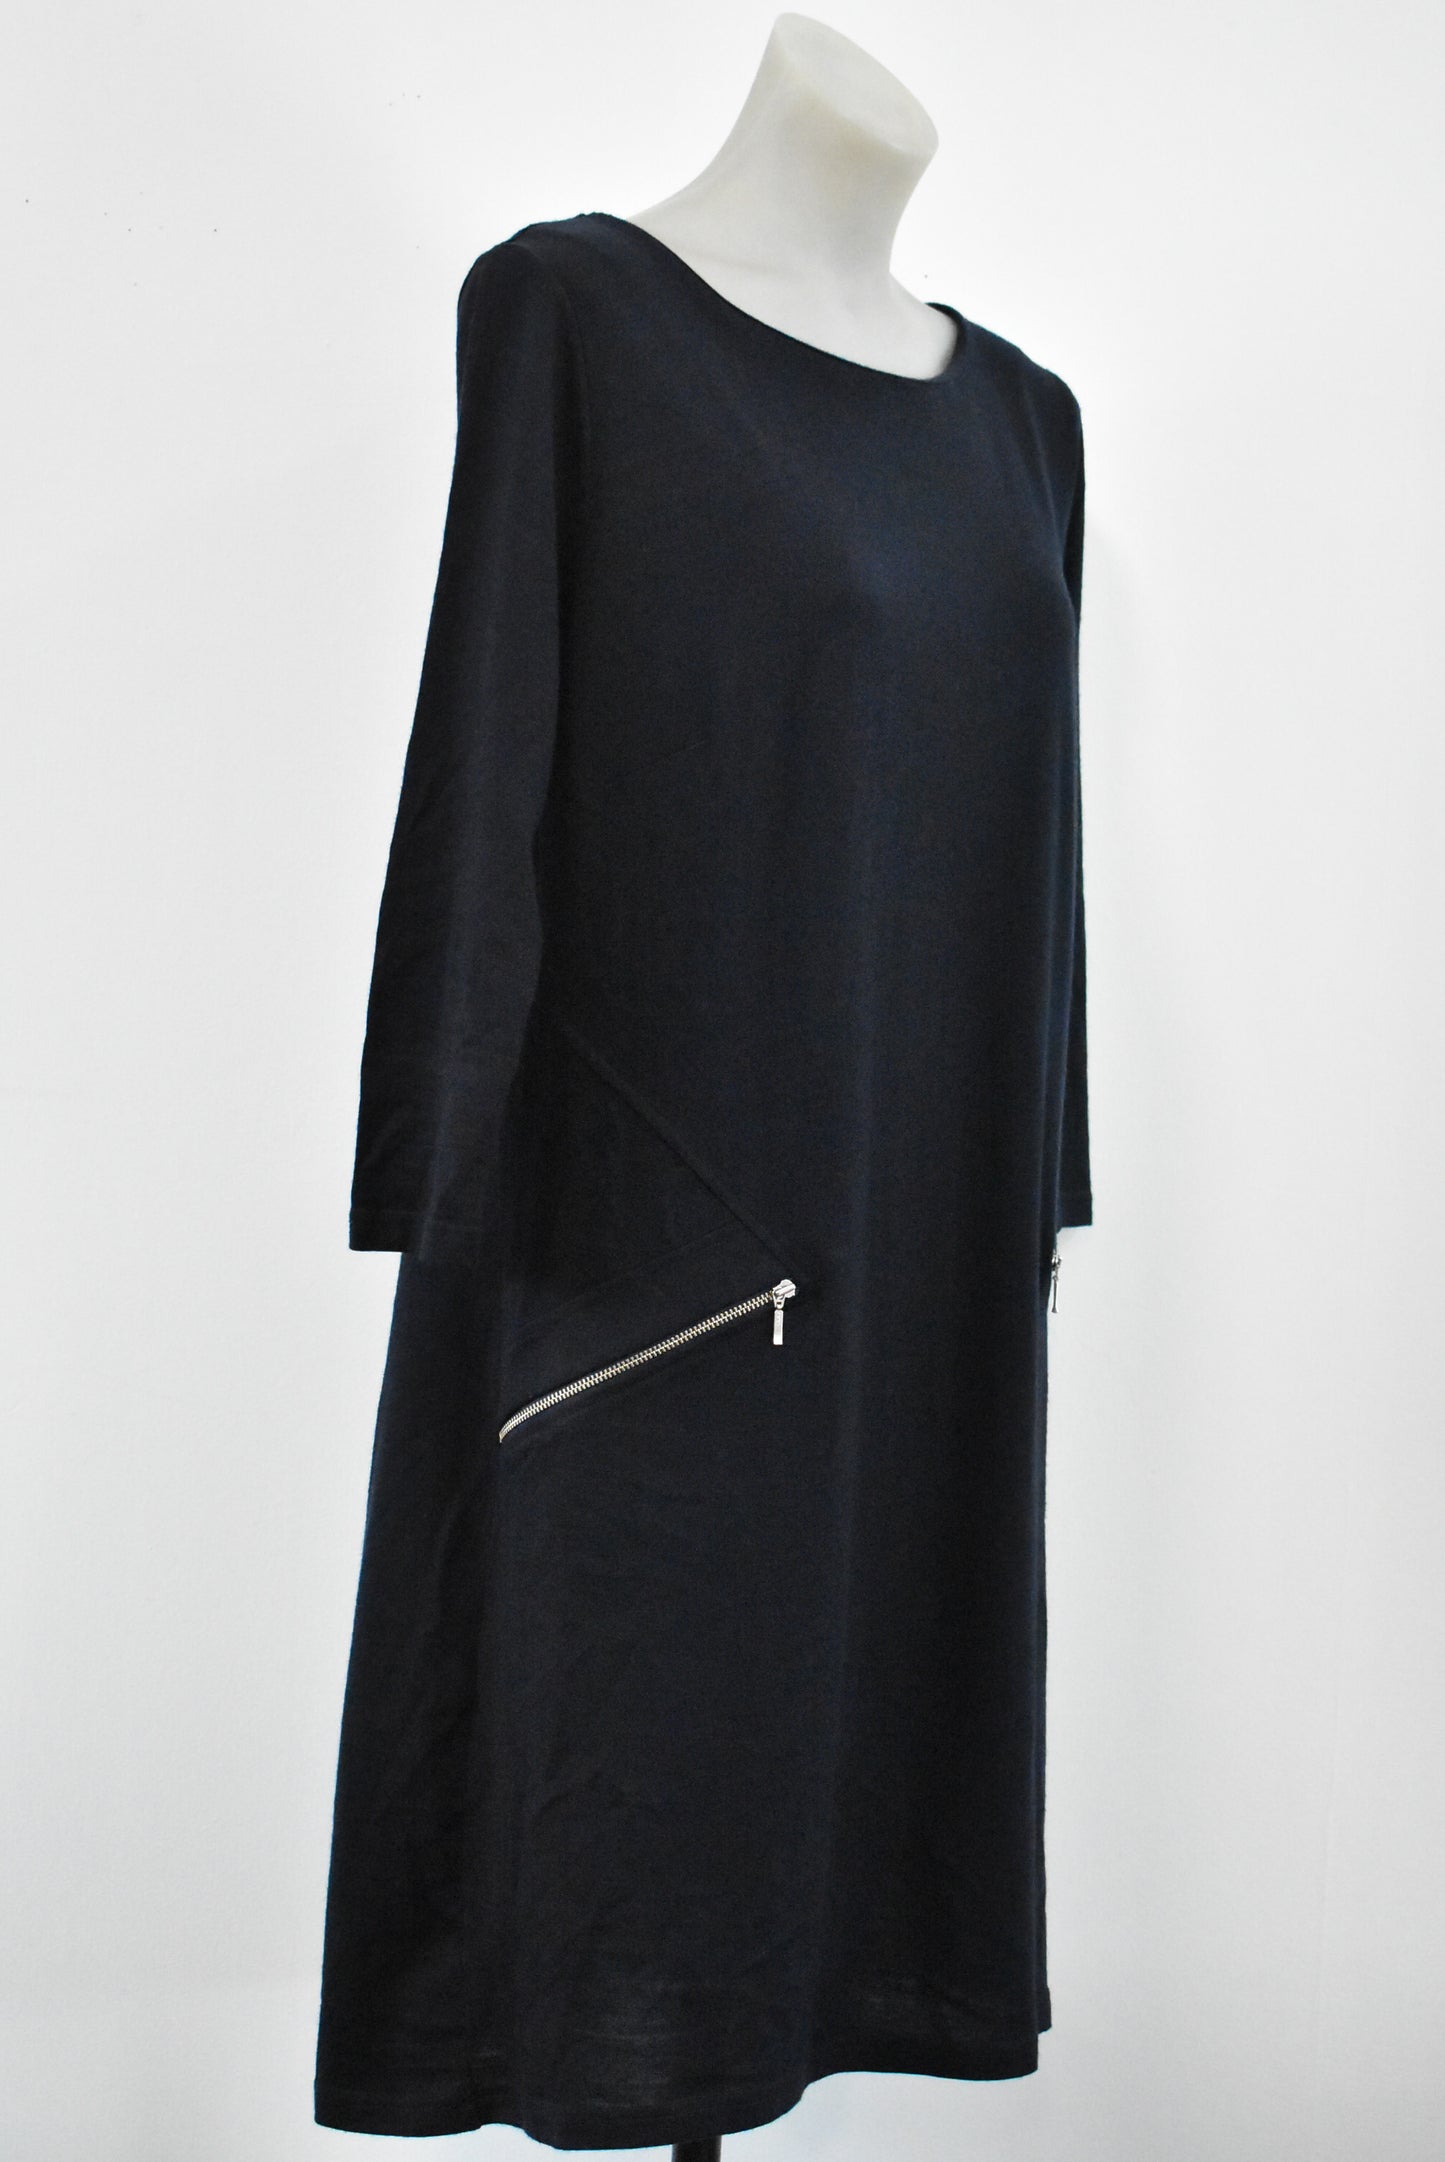 Merino wool long sleeve dress, M – Shop on Carroll Online